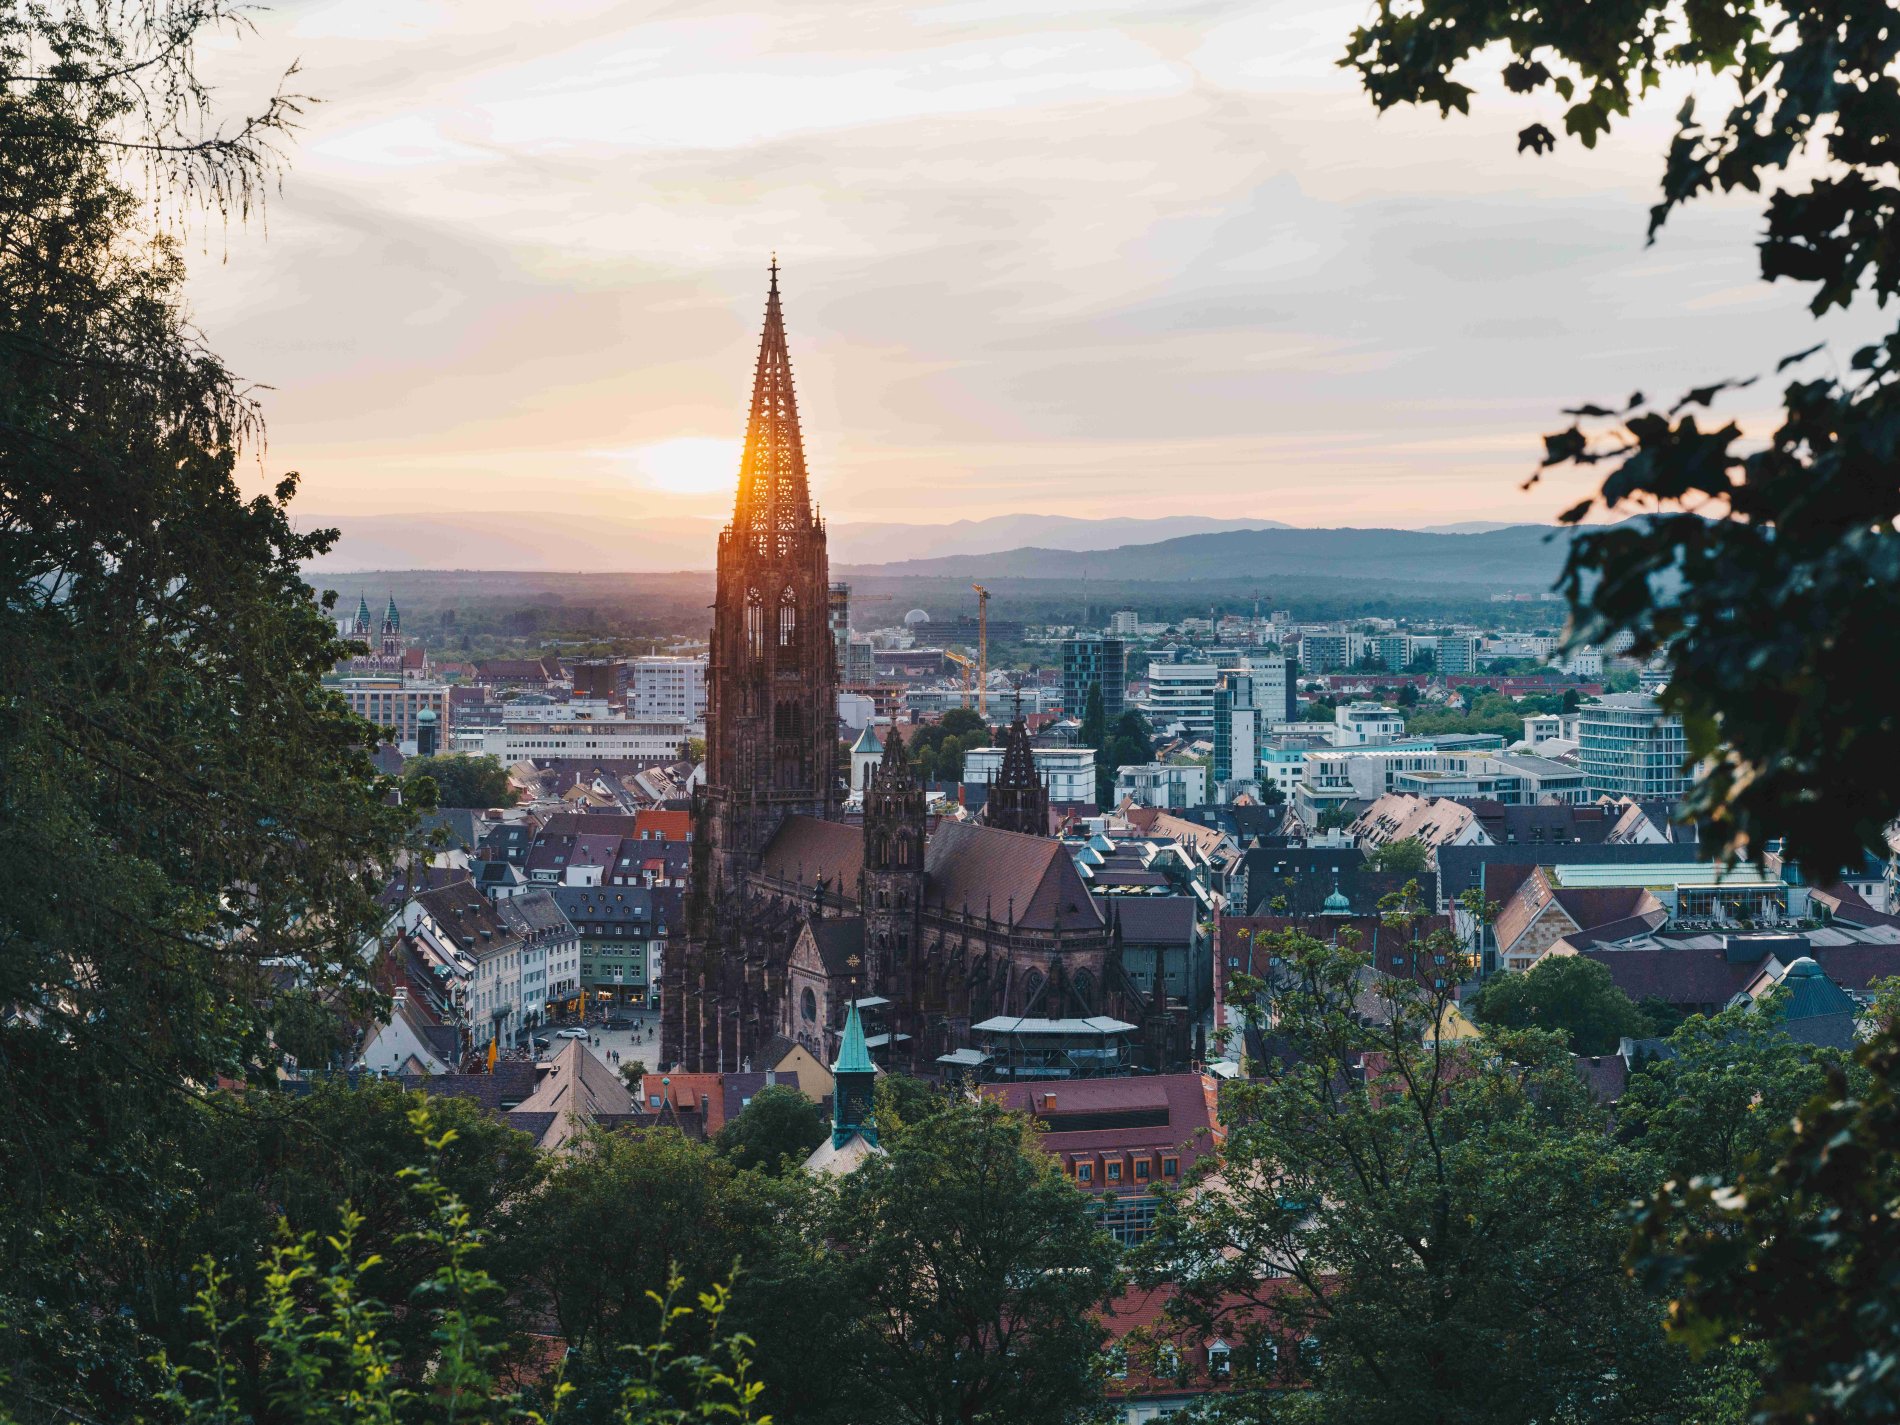 Sonnenuntergang über dem Freiburger Münster